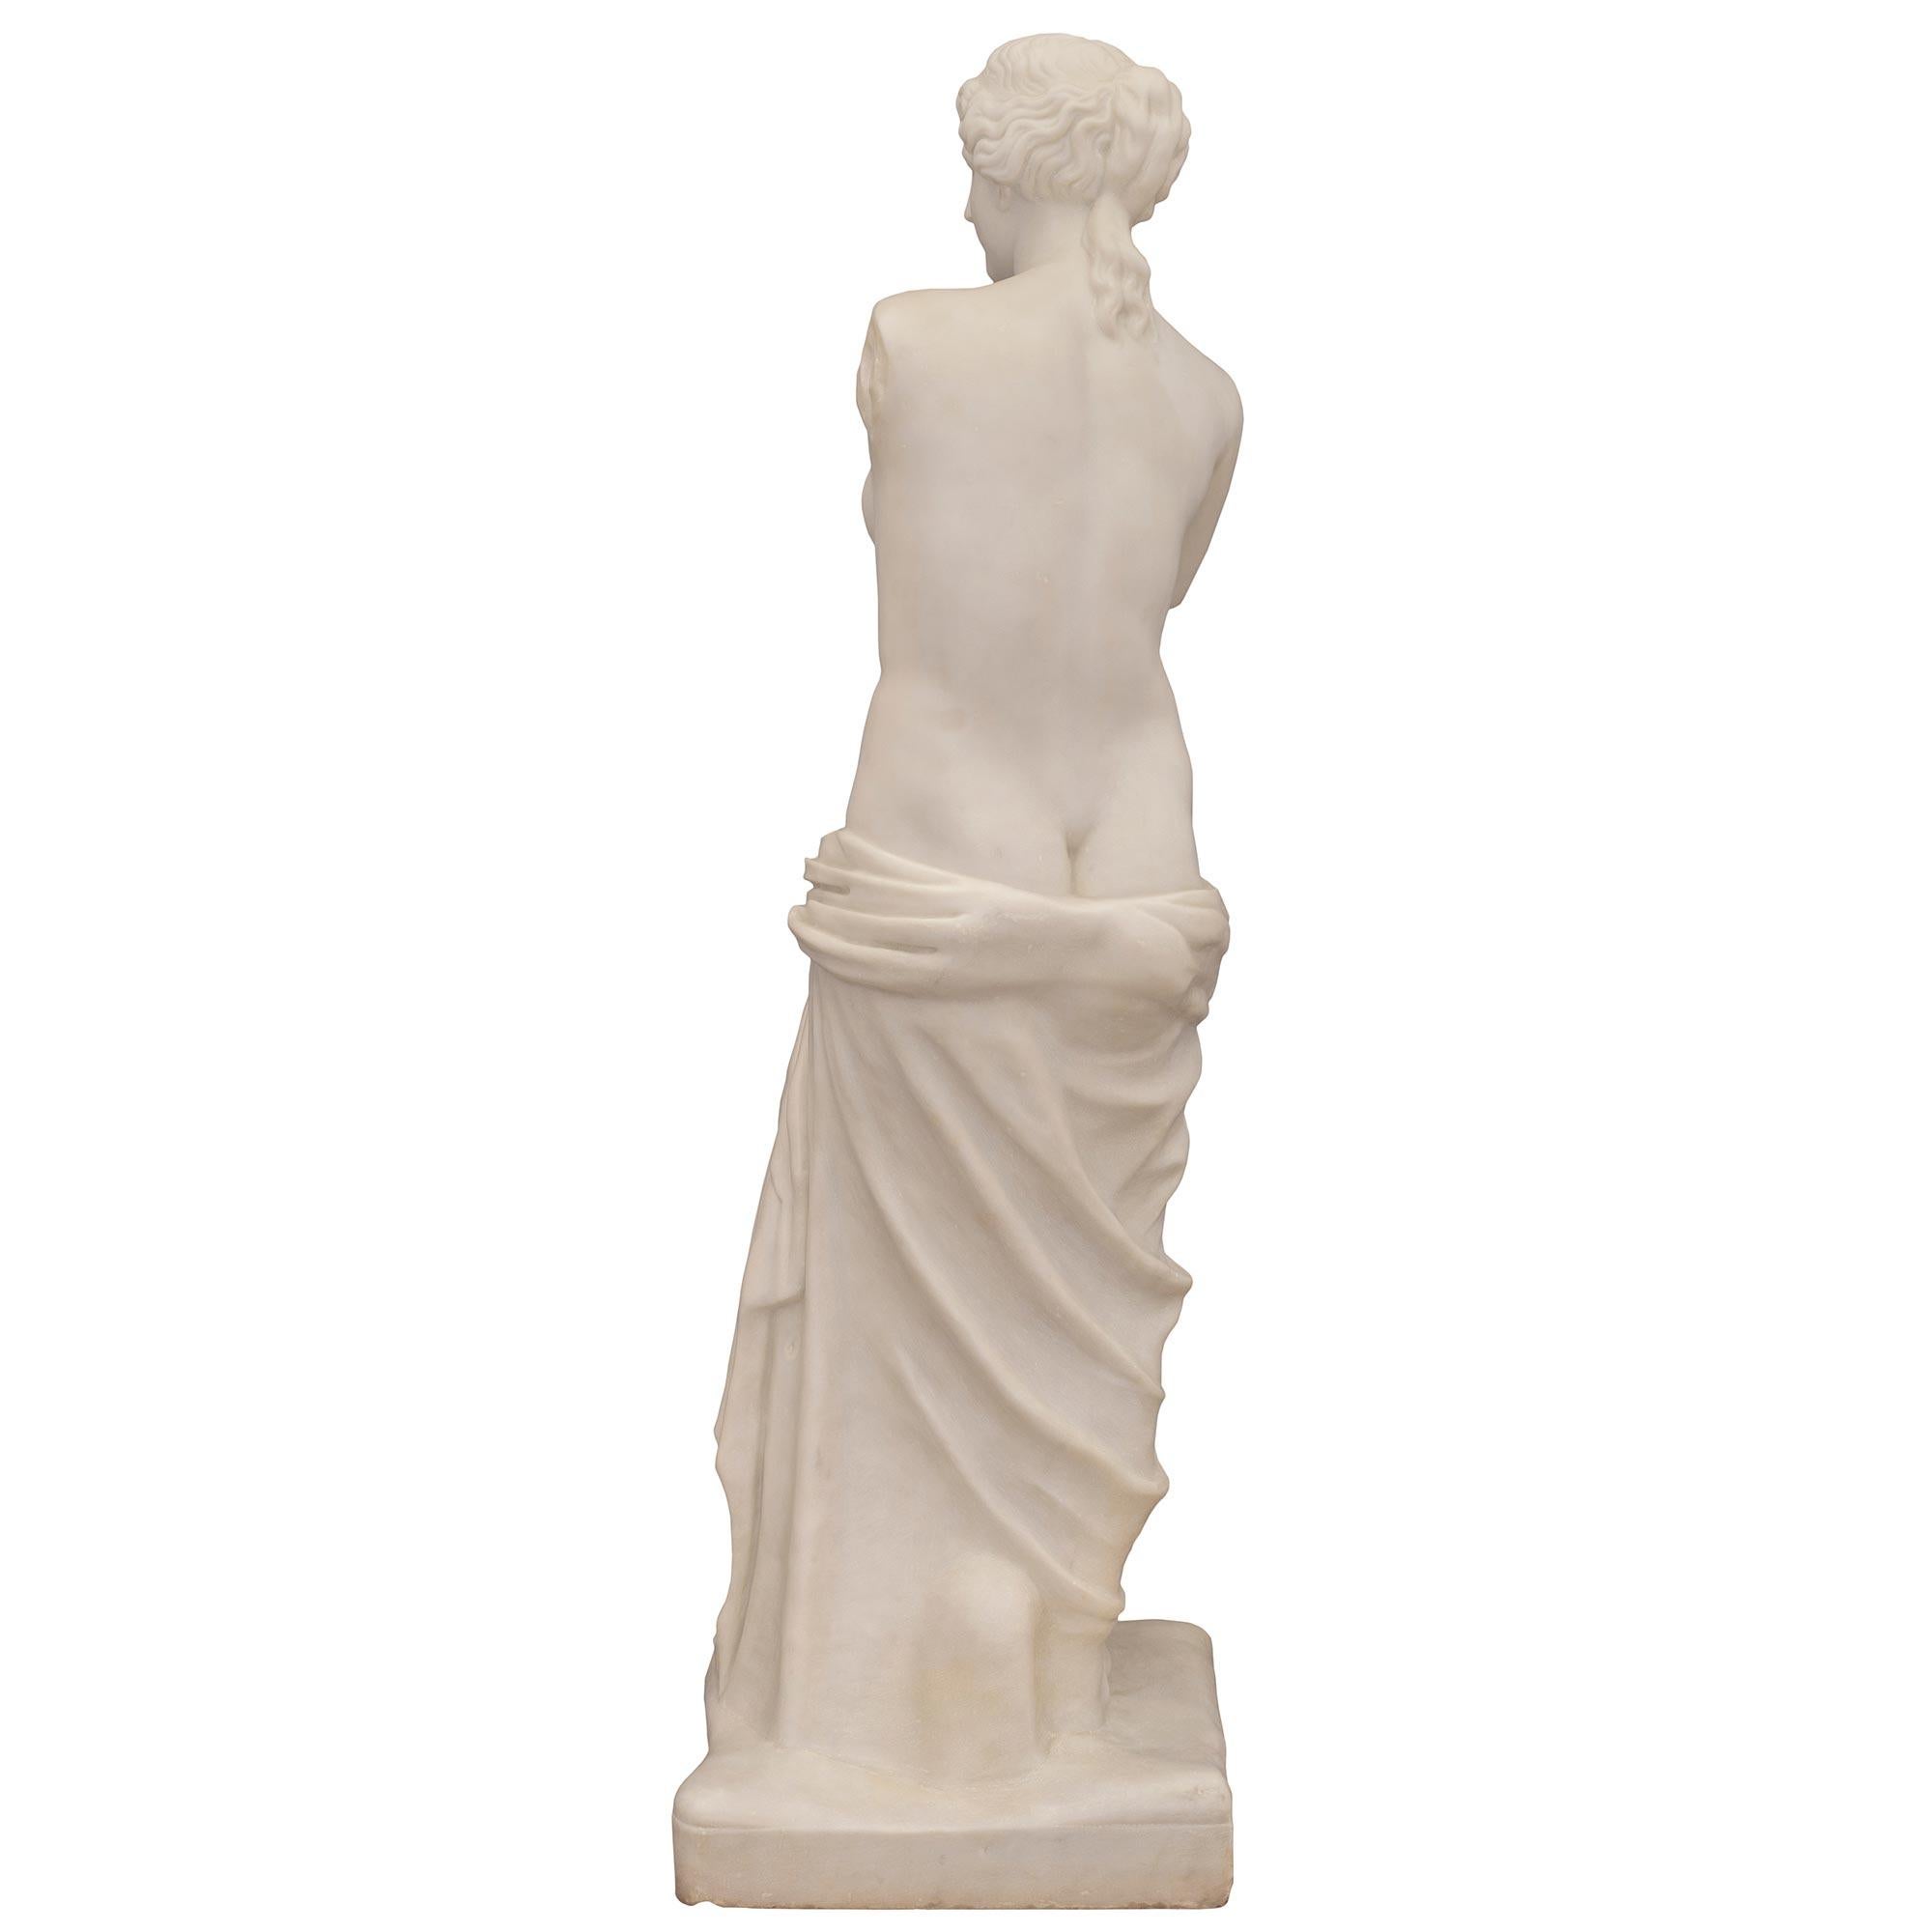 Très belle statue de la Vénus de Milo en marbre blanc de Carrare de style néo-classique italien du XIXe siècle, signée G. Pettini & Figli Pise. La statue est surmontée d'un socle en terre merveilleusement exécuté où figure la signature. La belle